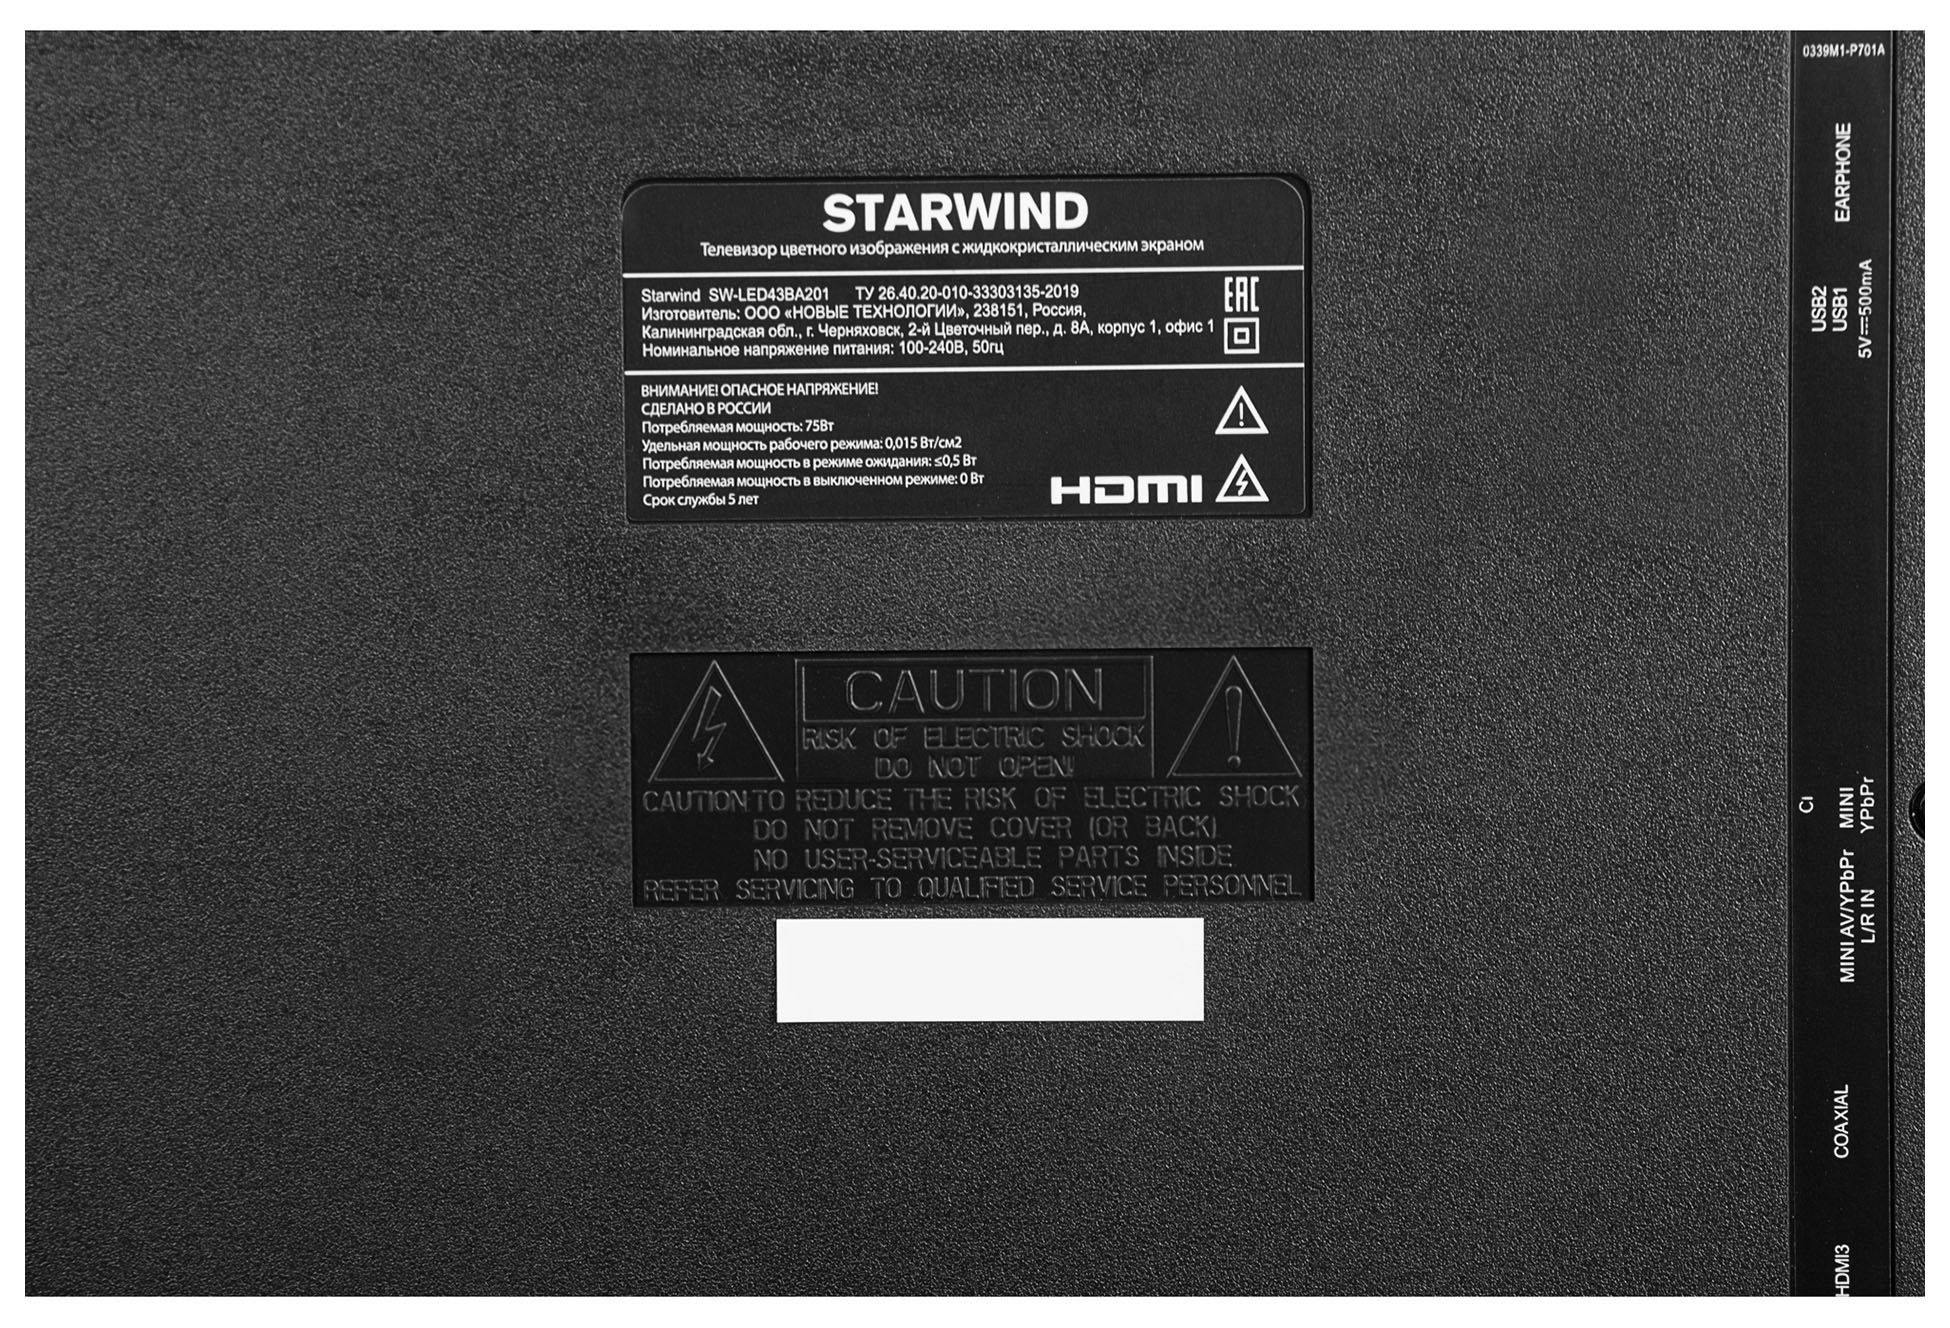 Телевизор Starwind SW-LED43BA201, 43", FULL HD, черный от магазина Старвинд